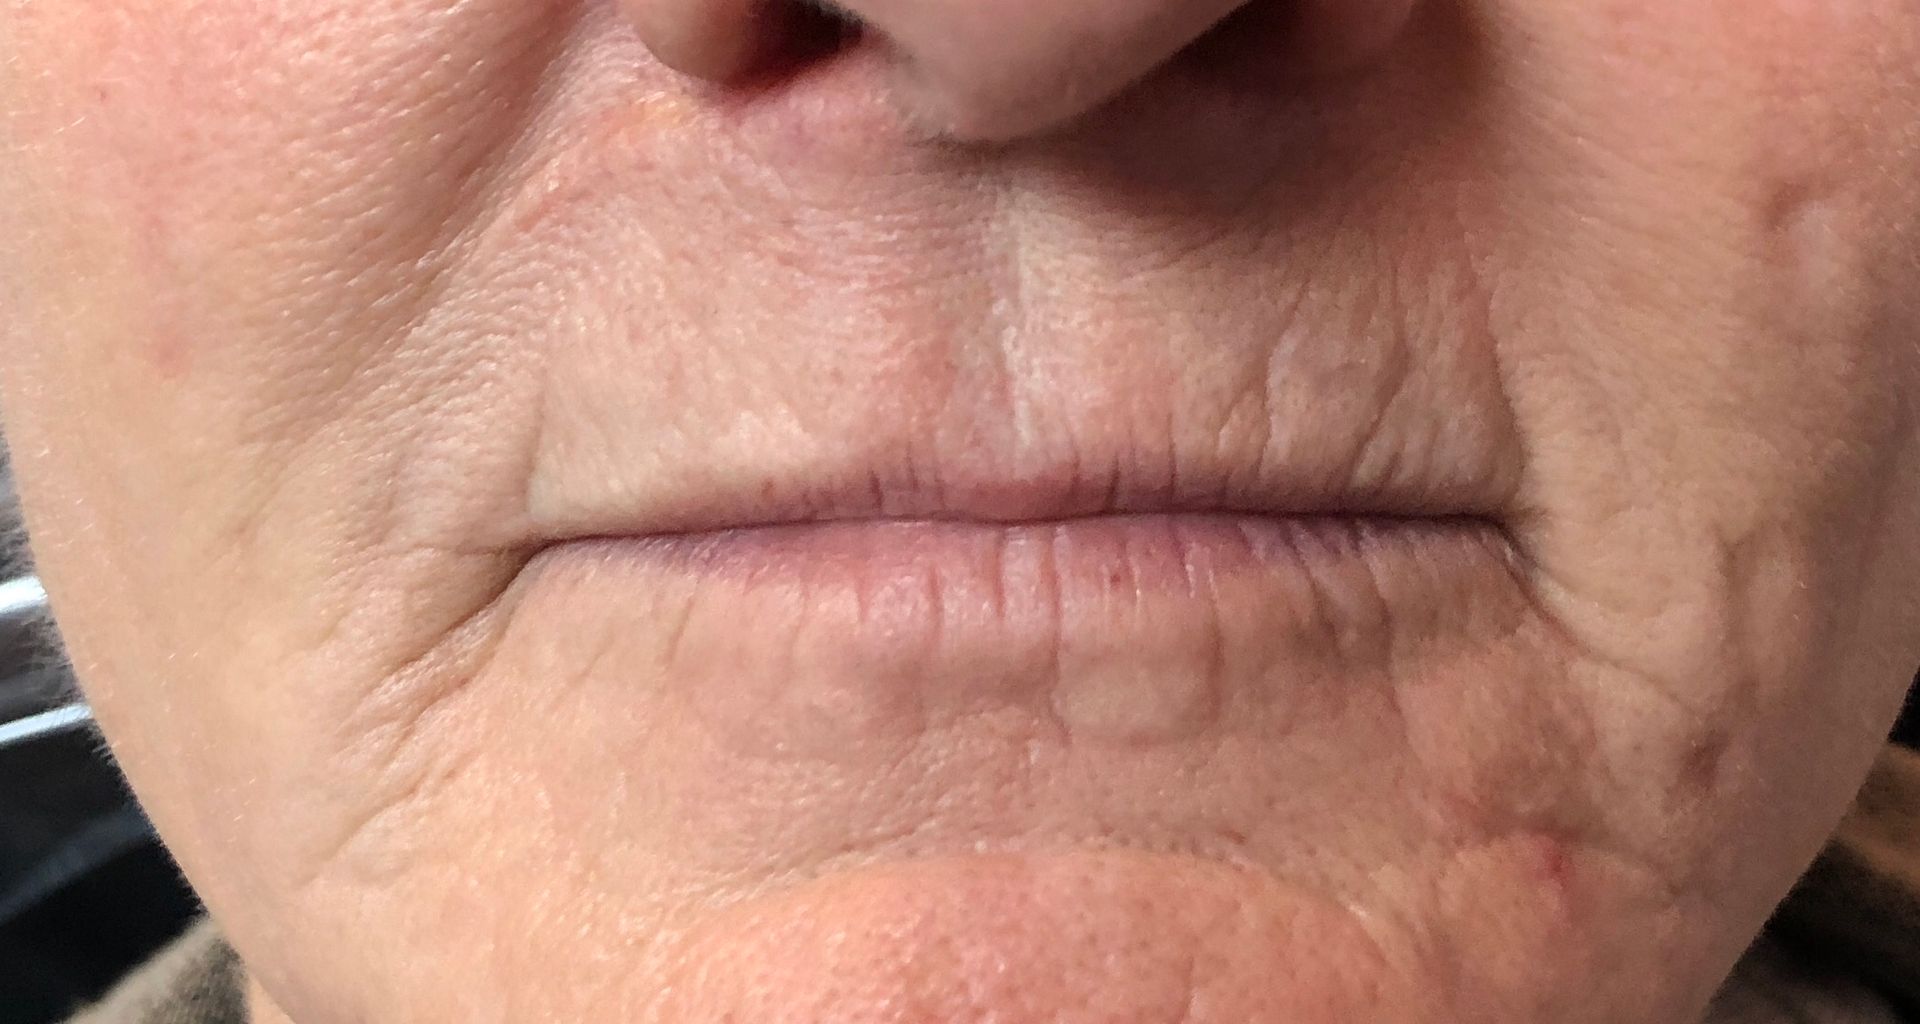 lips before procedure